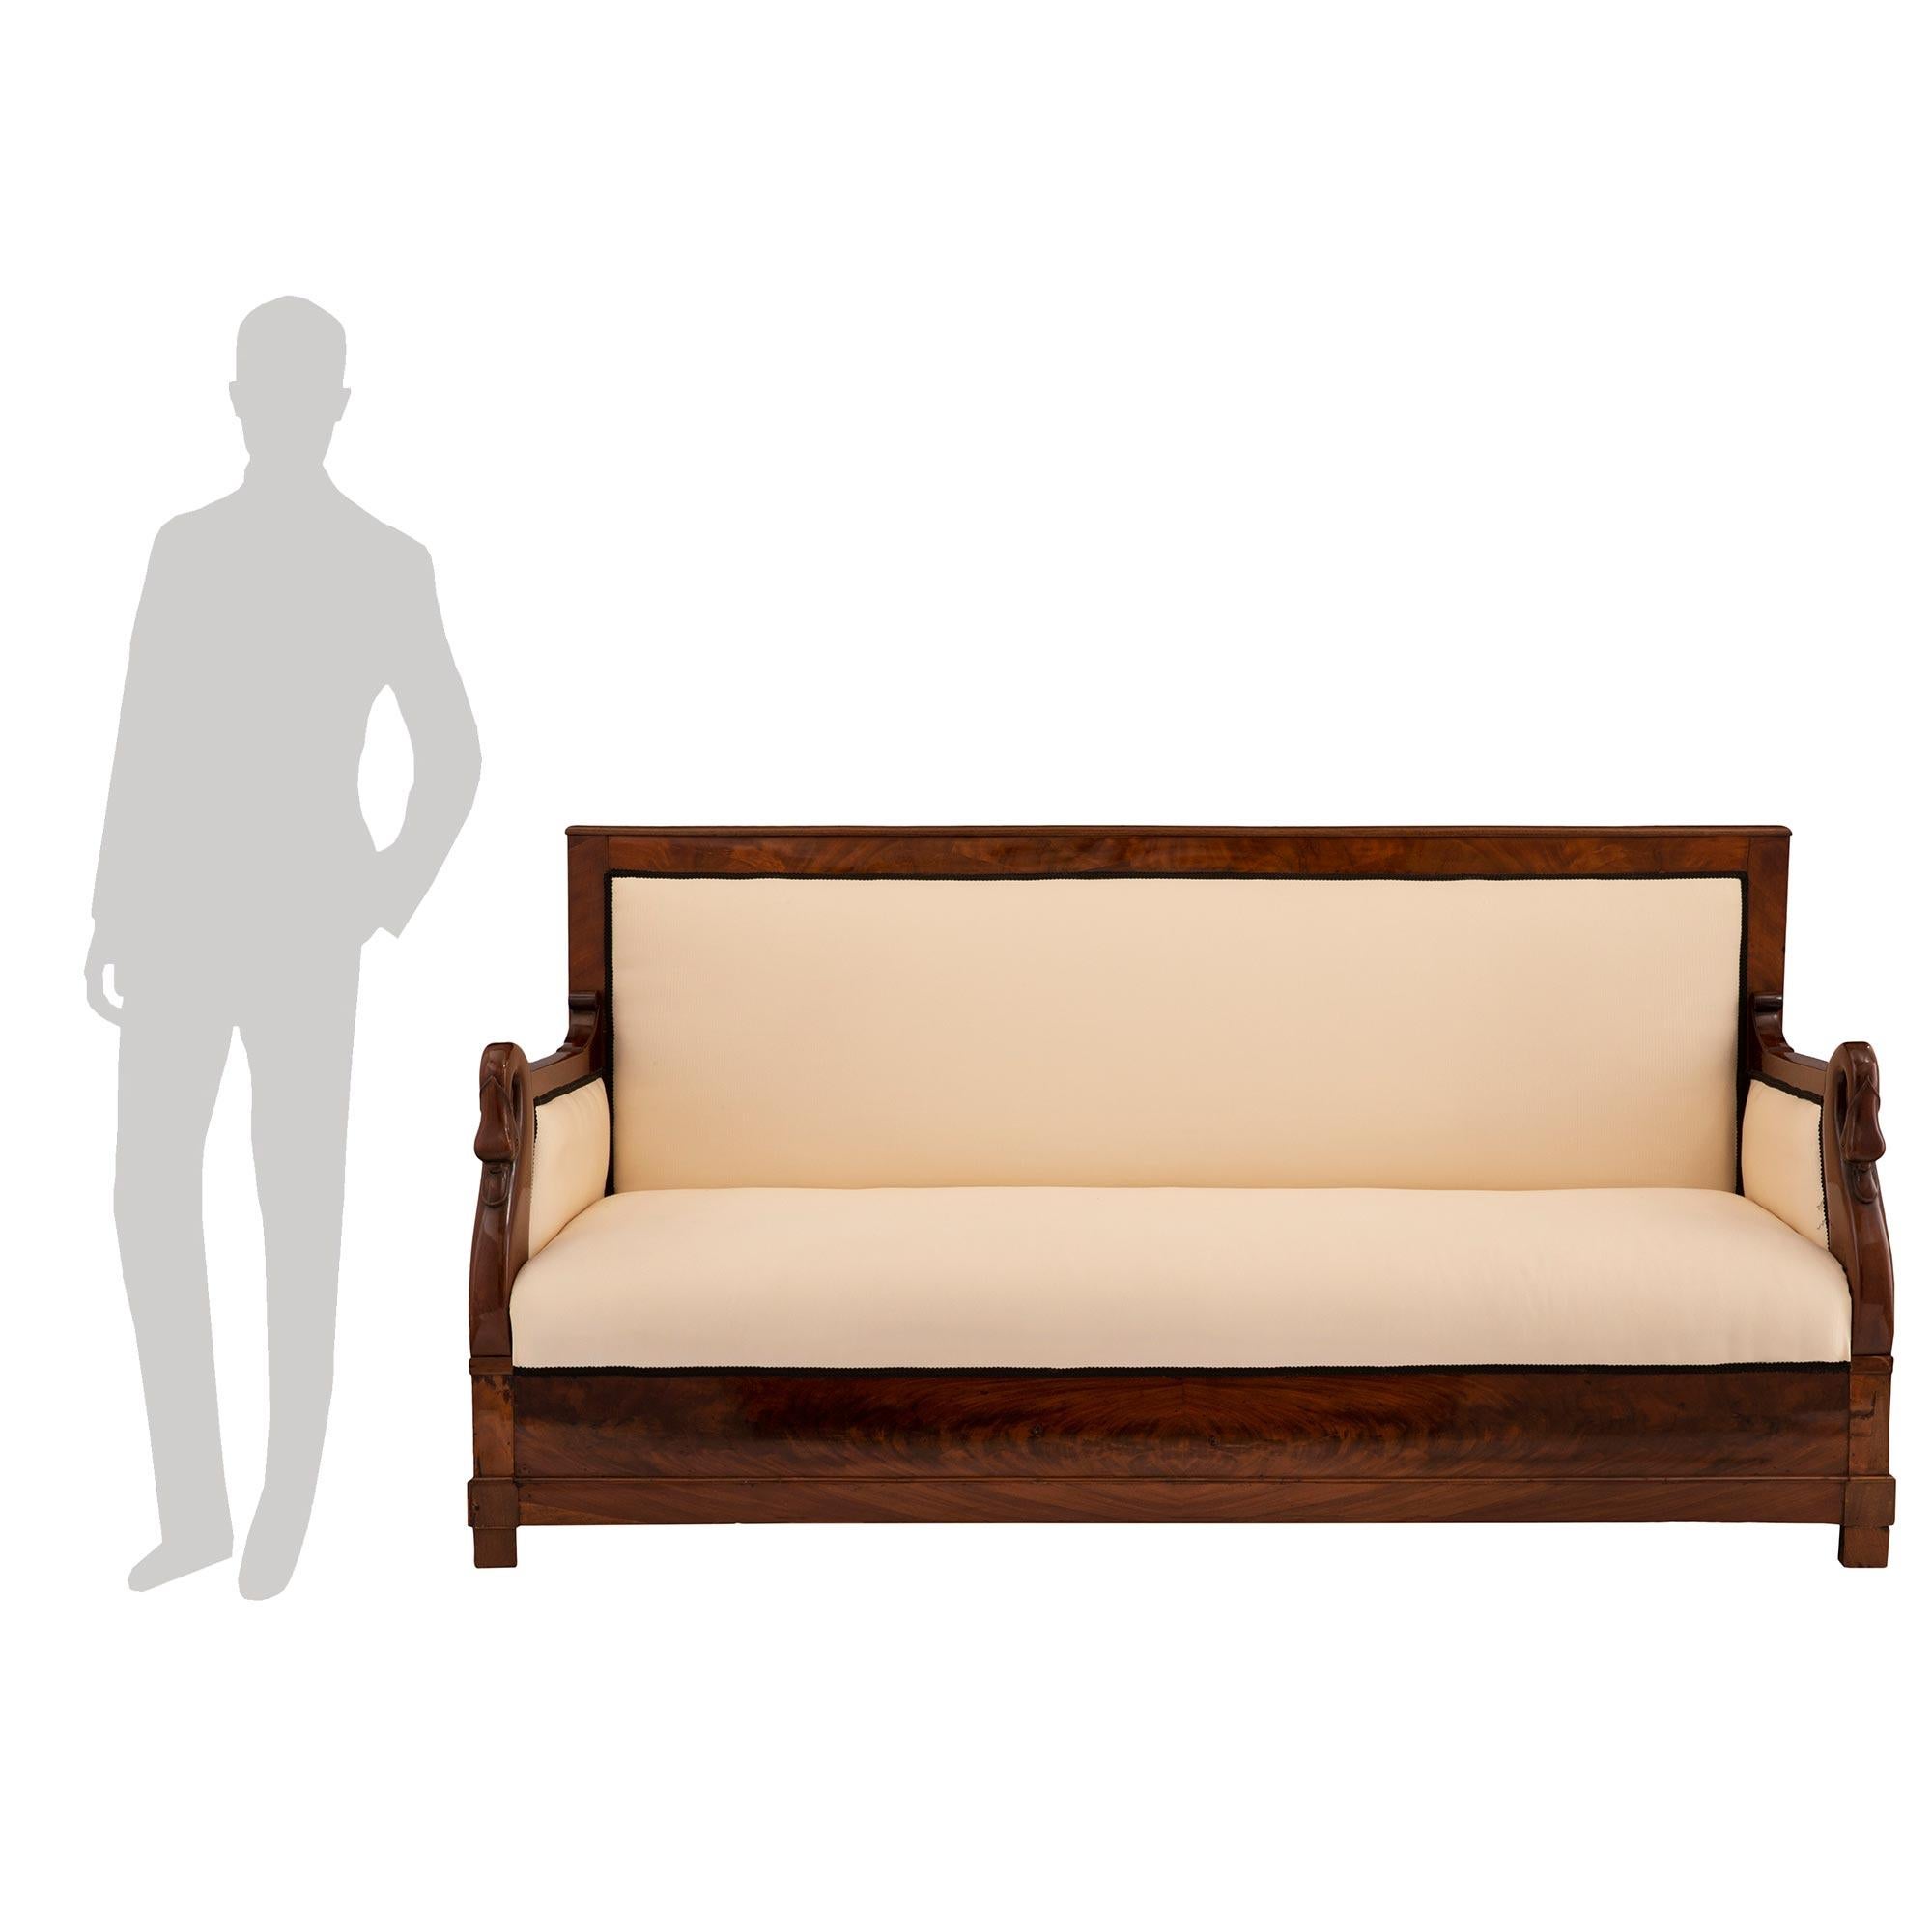 Ein schönes französisches neoklassizistisches Sofa aus dem 19. Kubanisches Mahagoni-Sofa. Das Sofa steht auf feinen, quadratischen Beinen unter dem geraden, schmetterlingsfurnierten Fries, der die schöne Mahagonimaserung zur Geltung bringt. Jeder